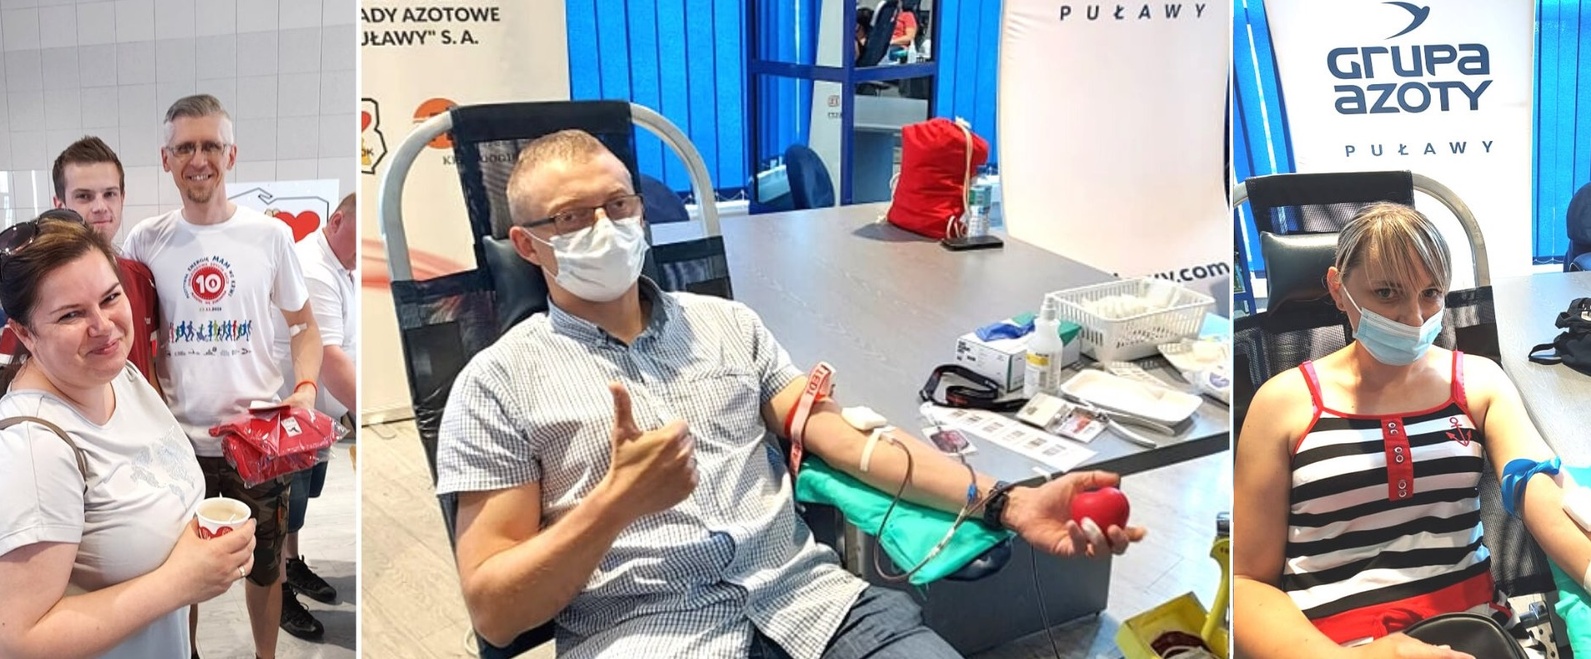 Kolejna akcja poboru krwi w Grupie Azoty Puławy zakończona sukcesem